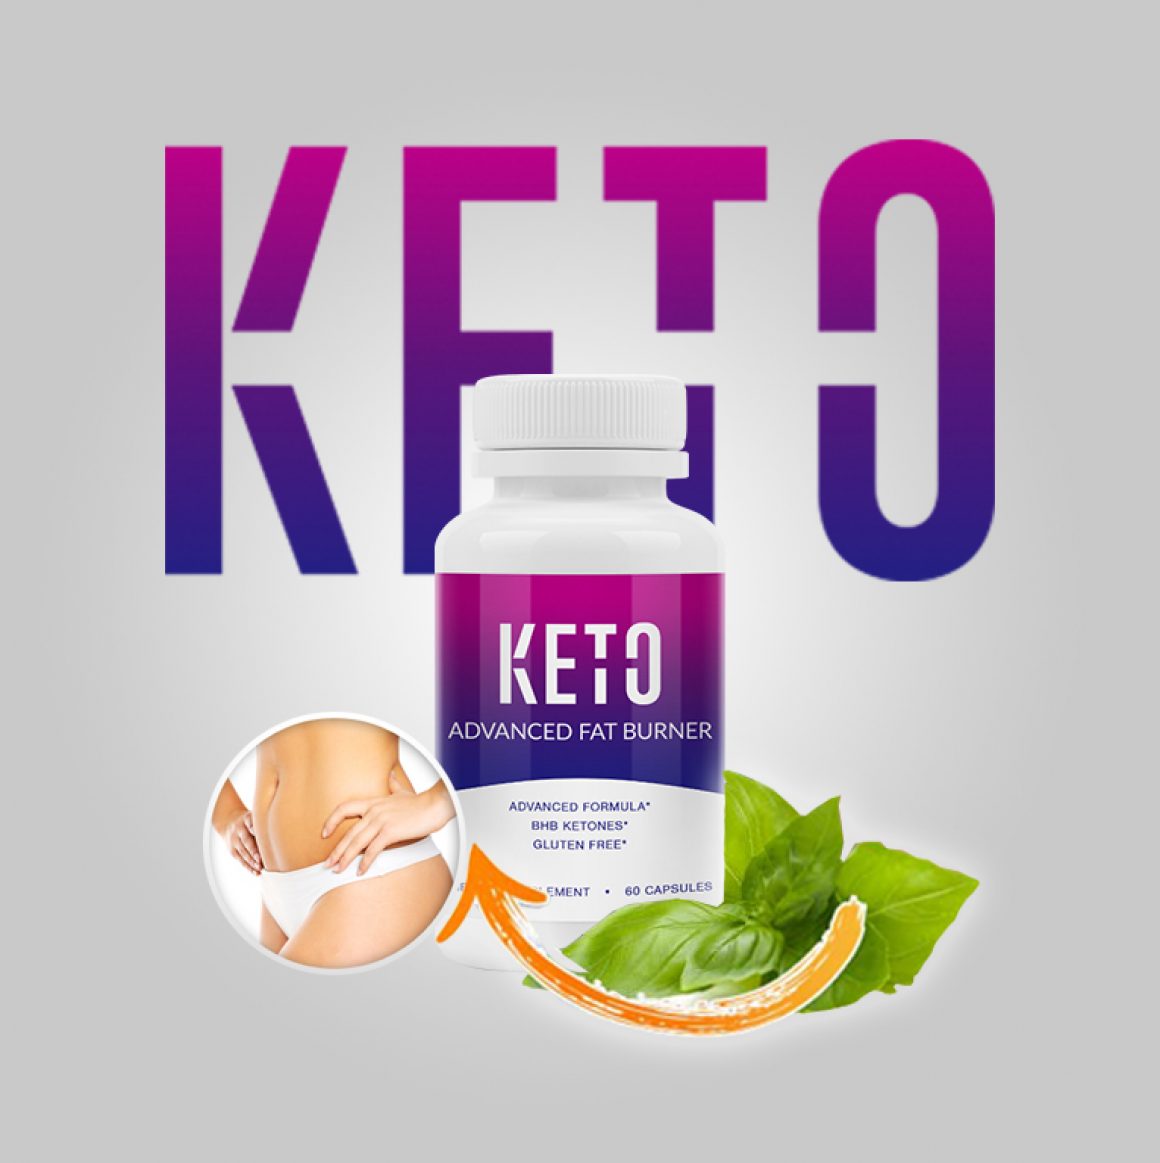 Píldoras de Dieta Keto Advanced en Farmacias – Composición y Contraindicaciones